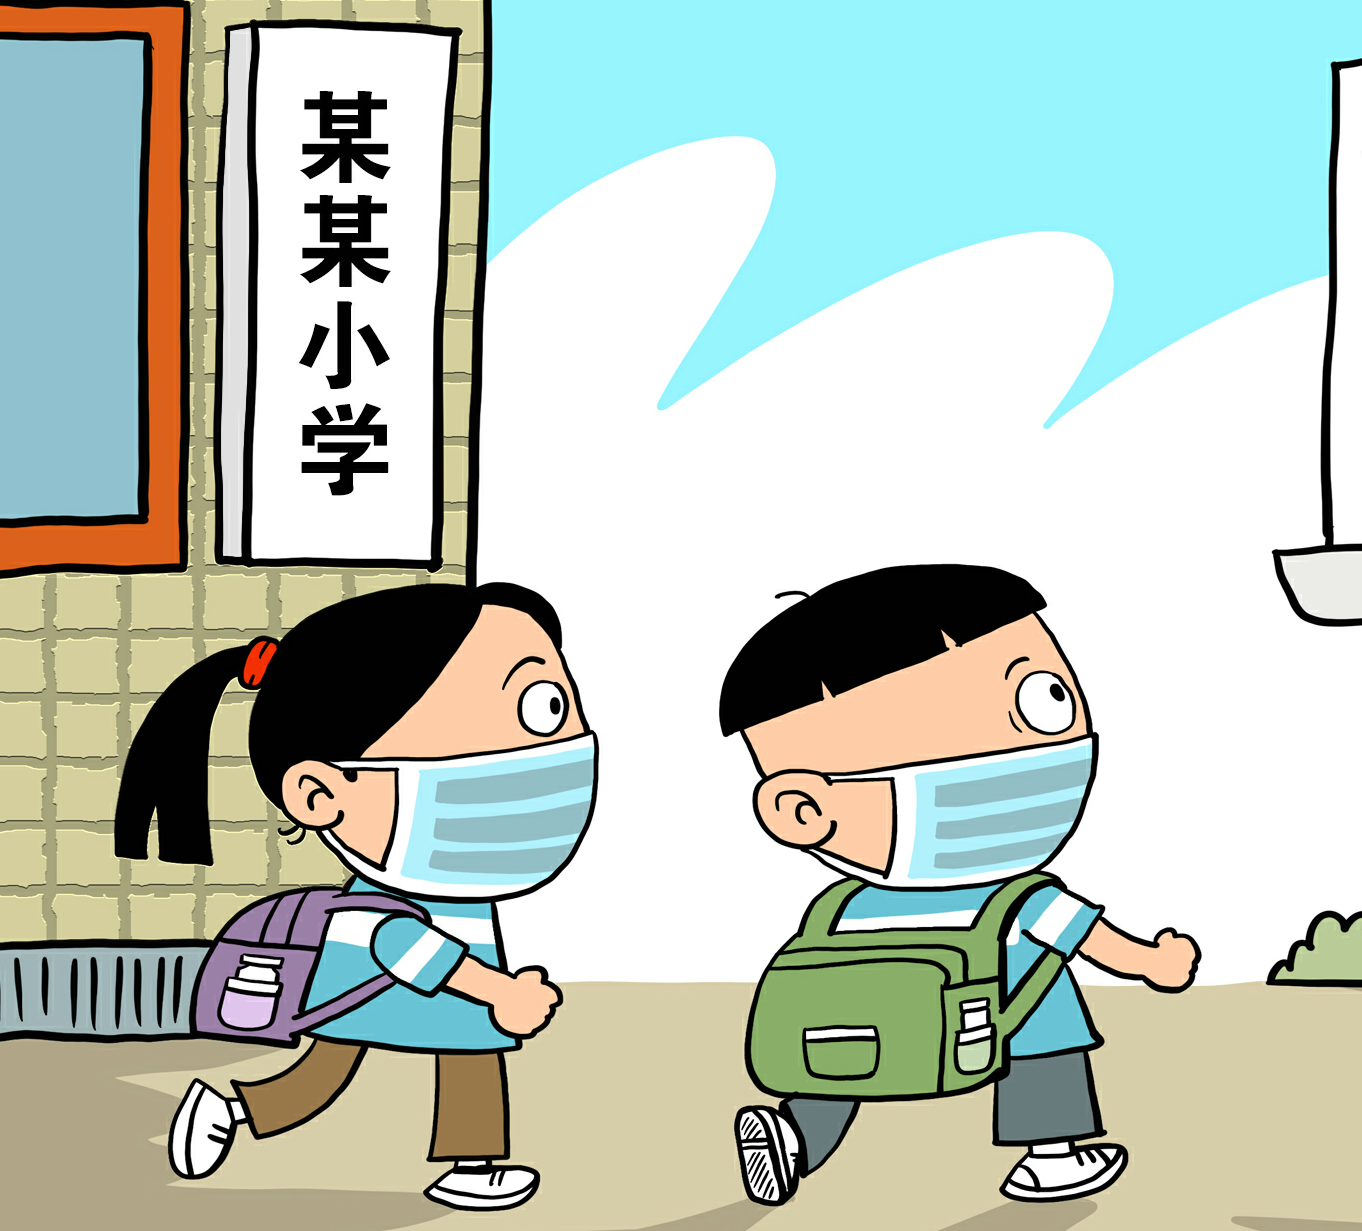 北京:戴口罩上学!